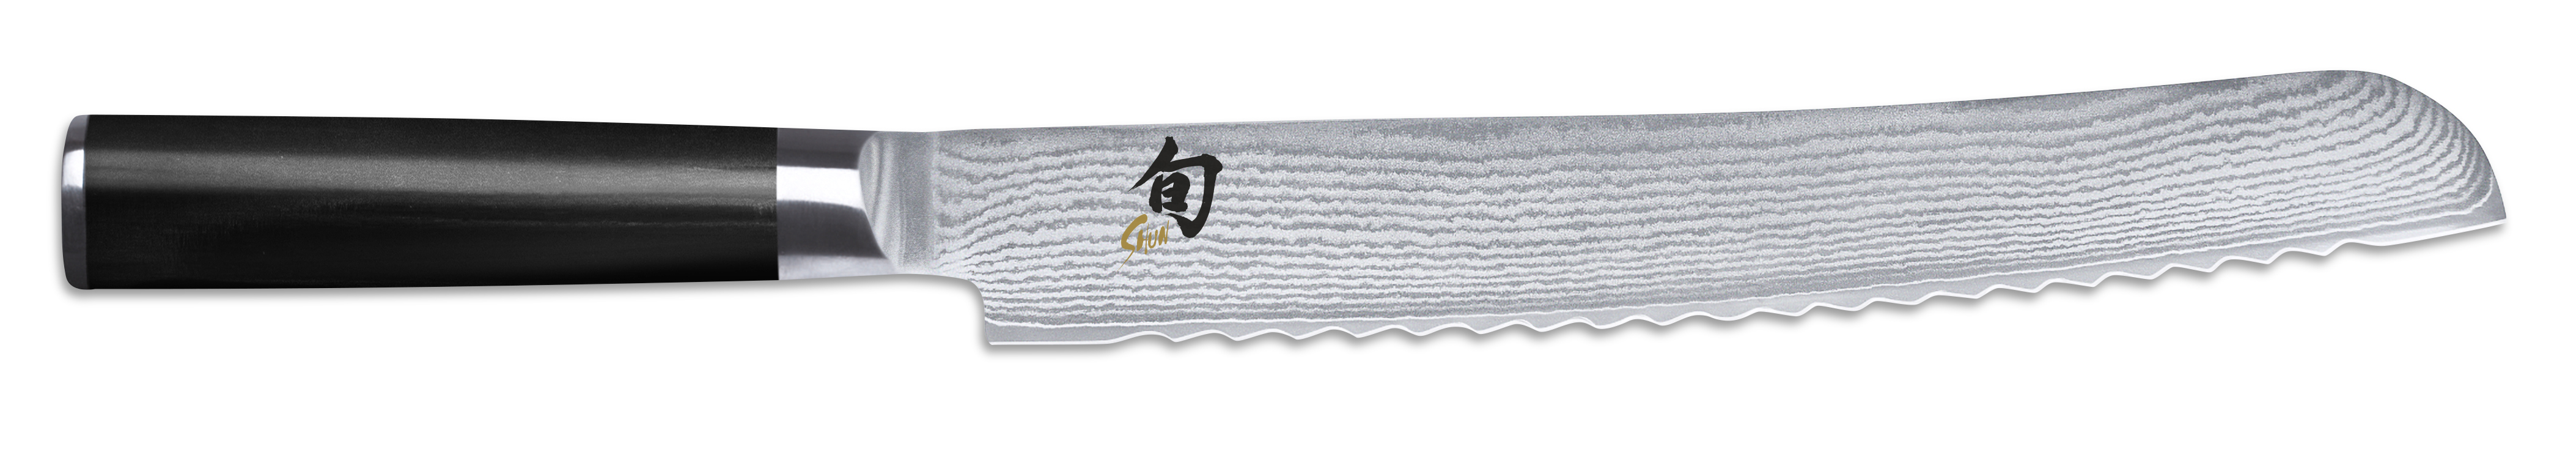 KAI - SHUN Kochmesser Brotmesser, DM-0705  